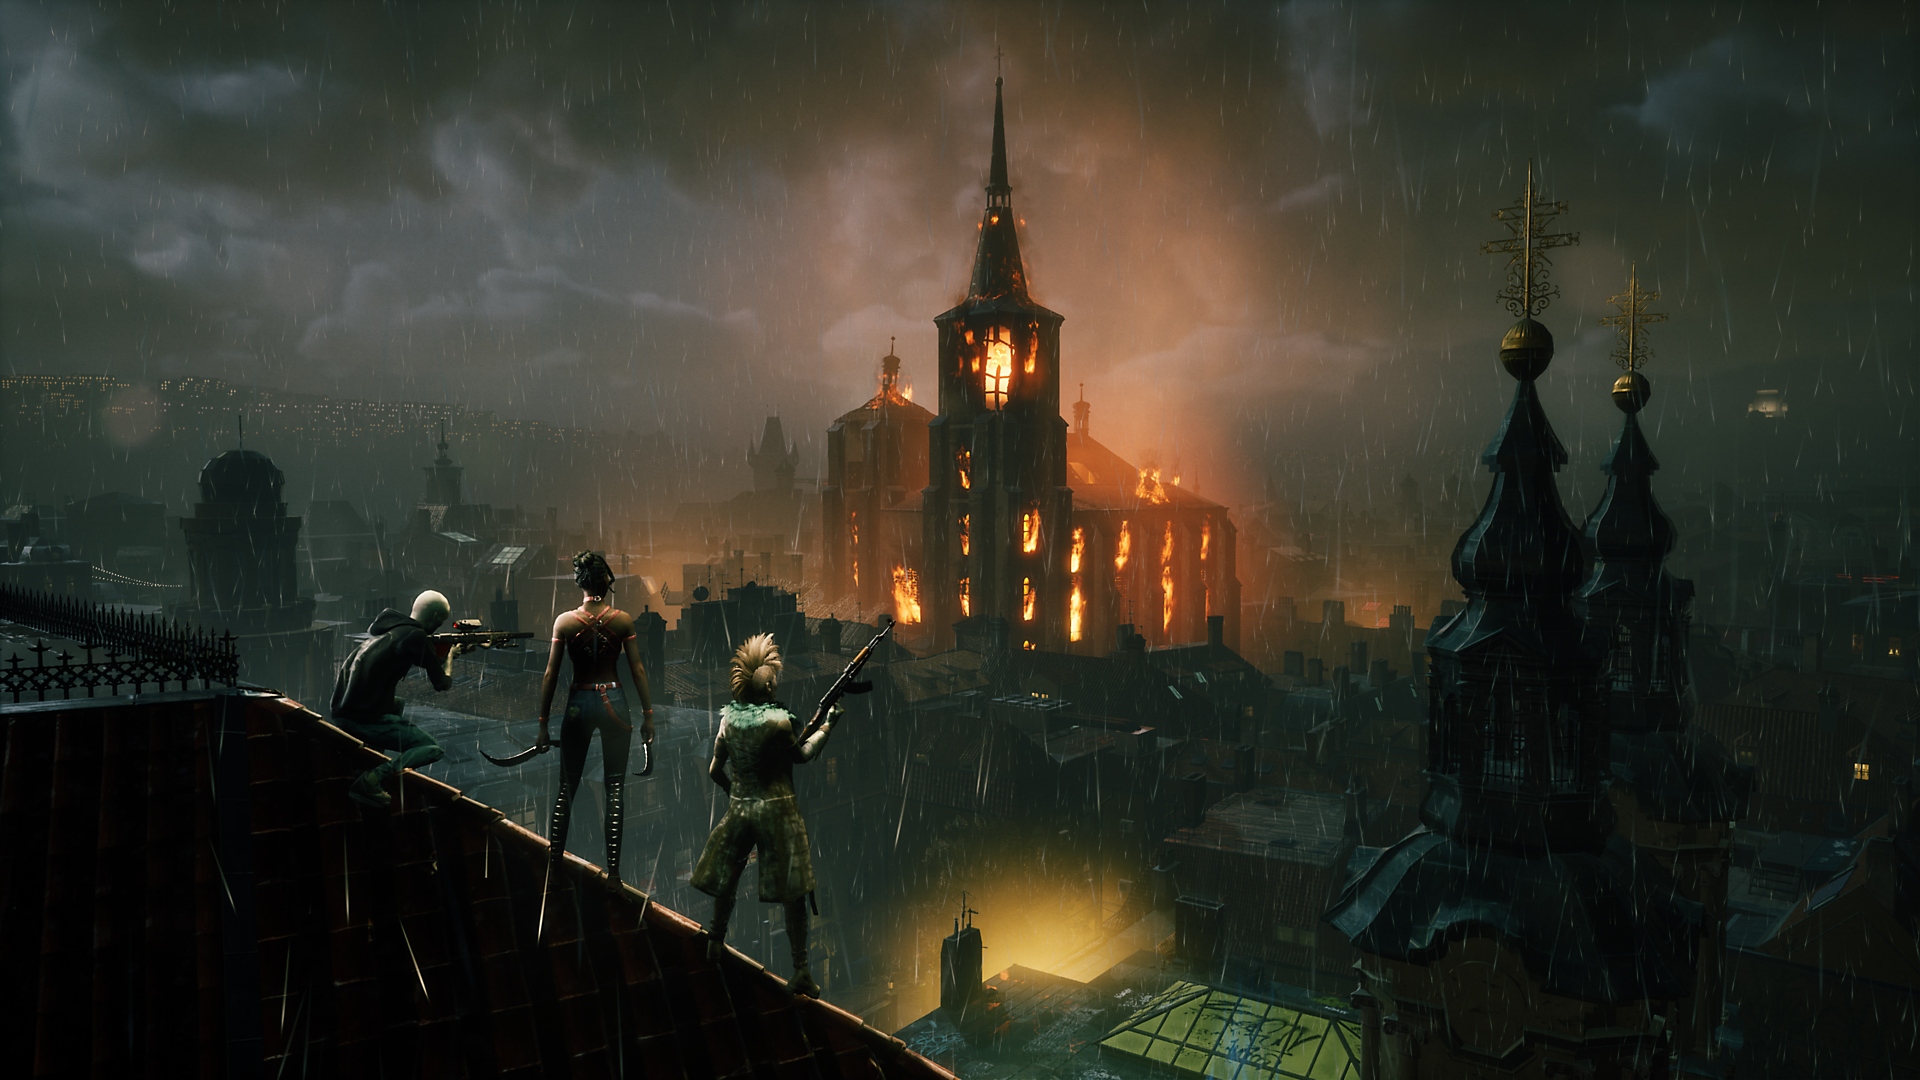 Bloodhunt – kuvakaappaus jossa vampyyrit seisovat katolla katsellen kaupungin siluettia kaukaisuudessa